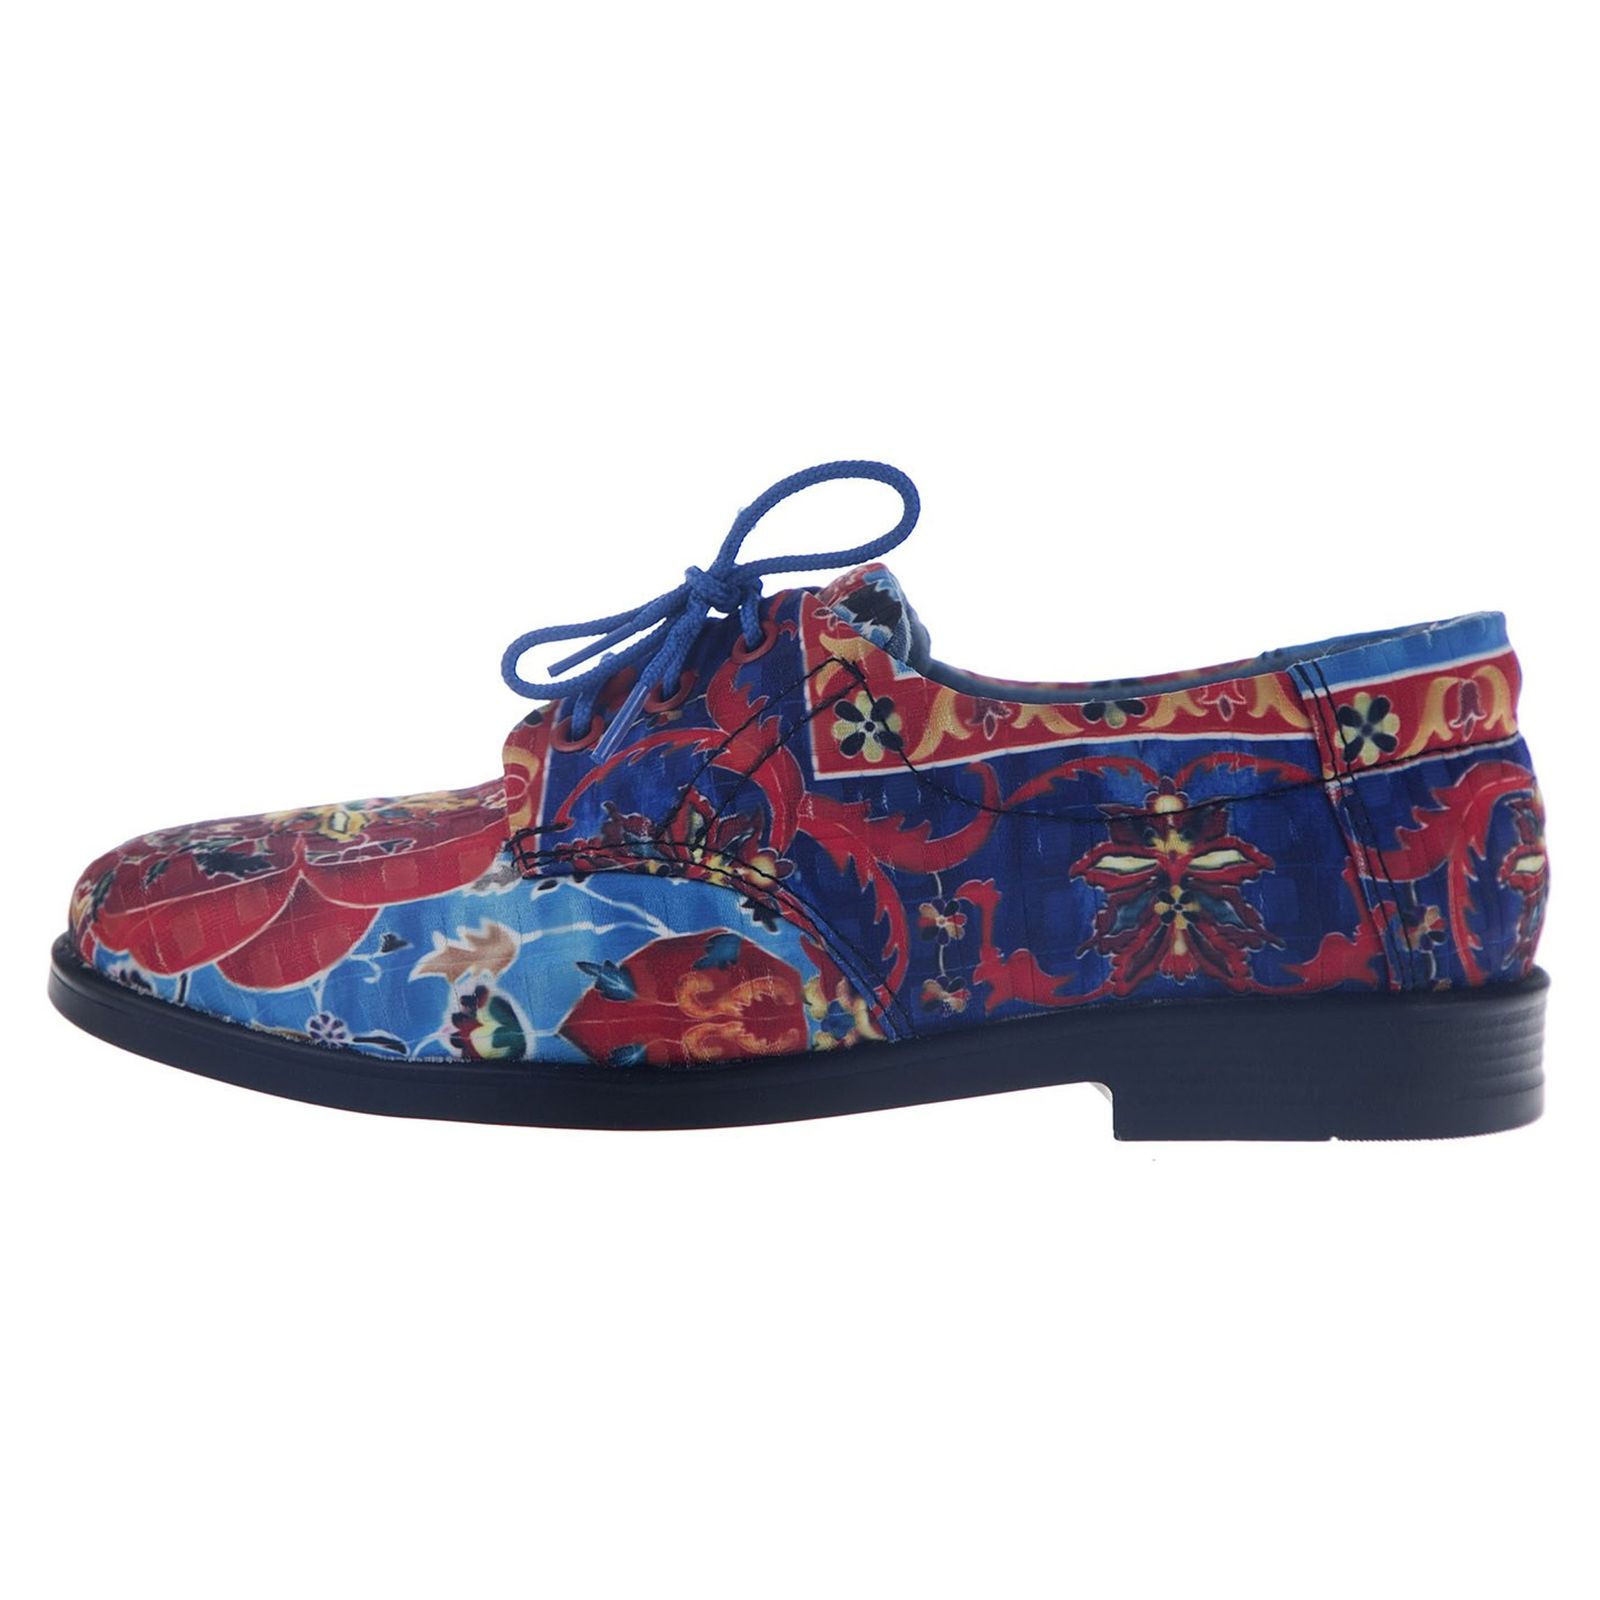 کفش تخت زنانه مدل نقاشی - مینا فخارزاده - قرمز/ آبی - 1